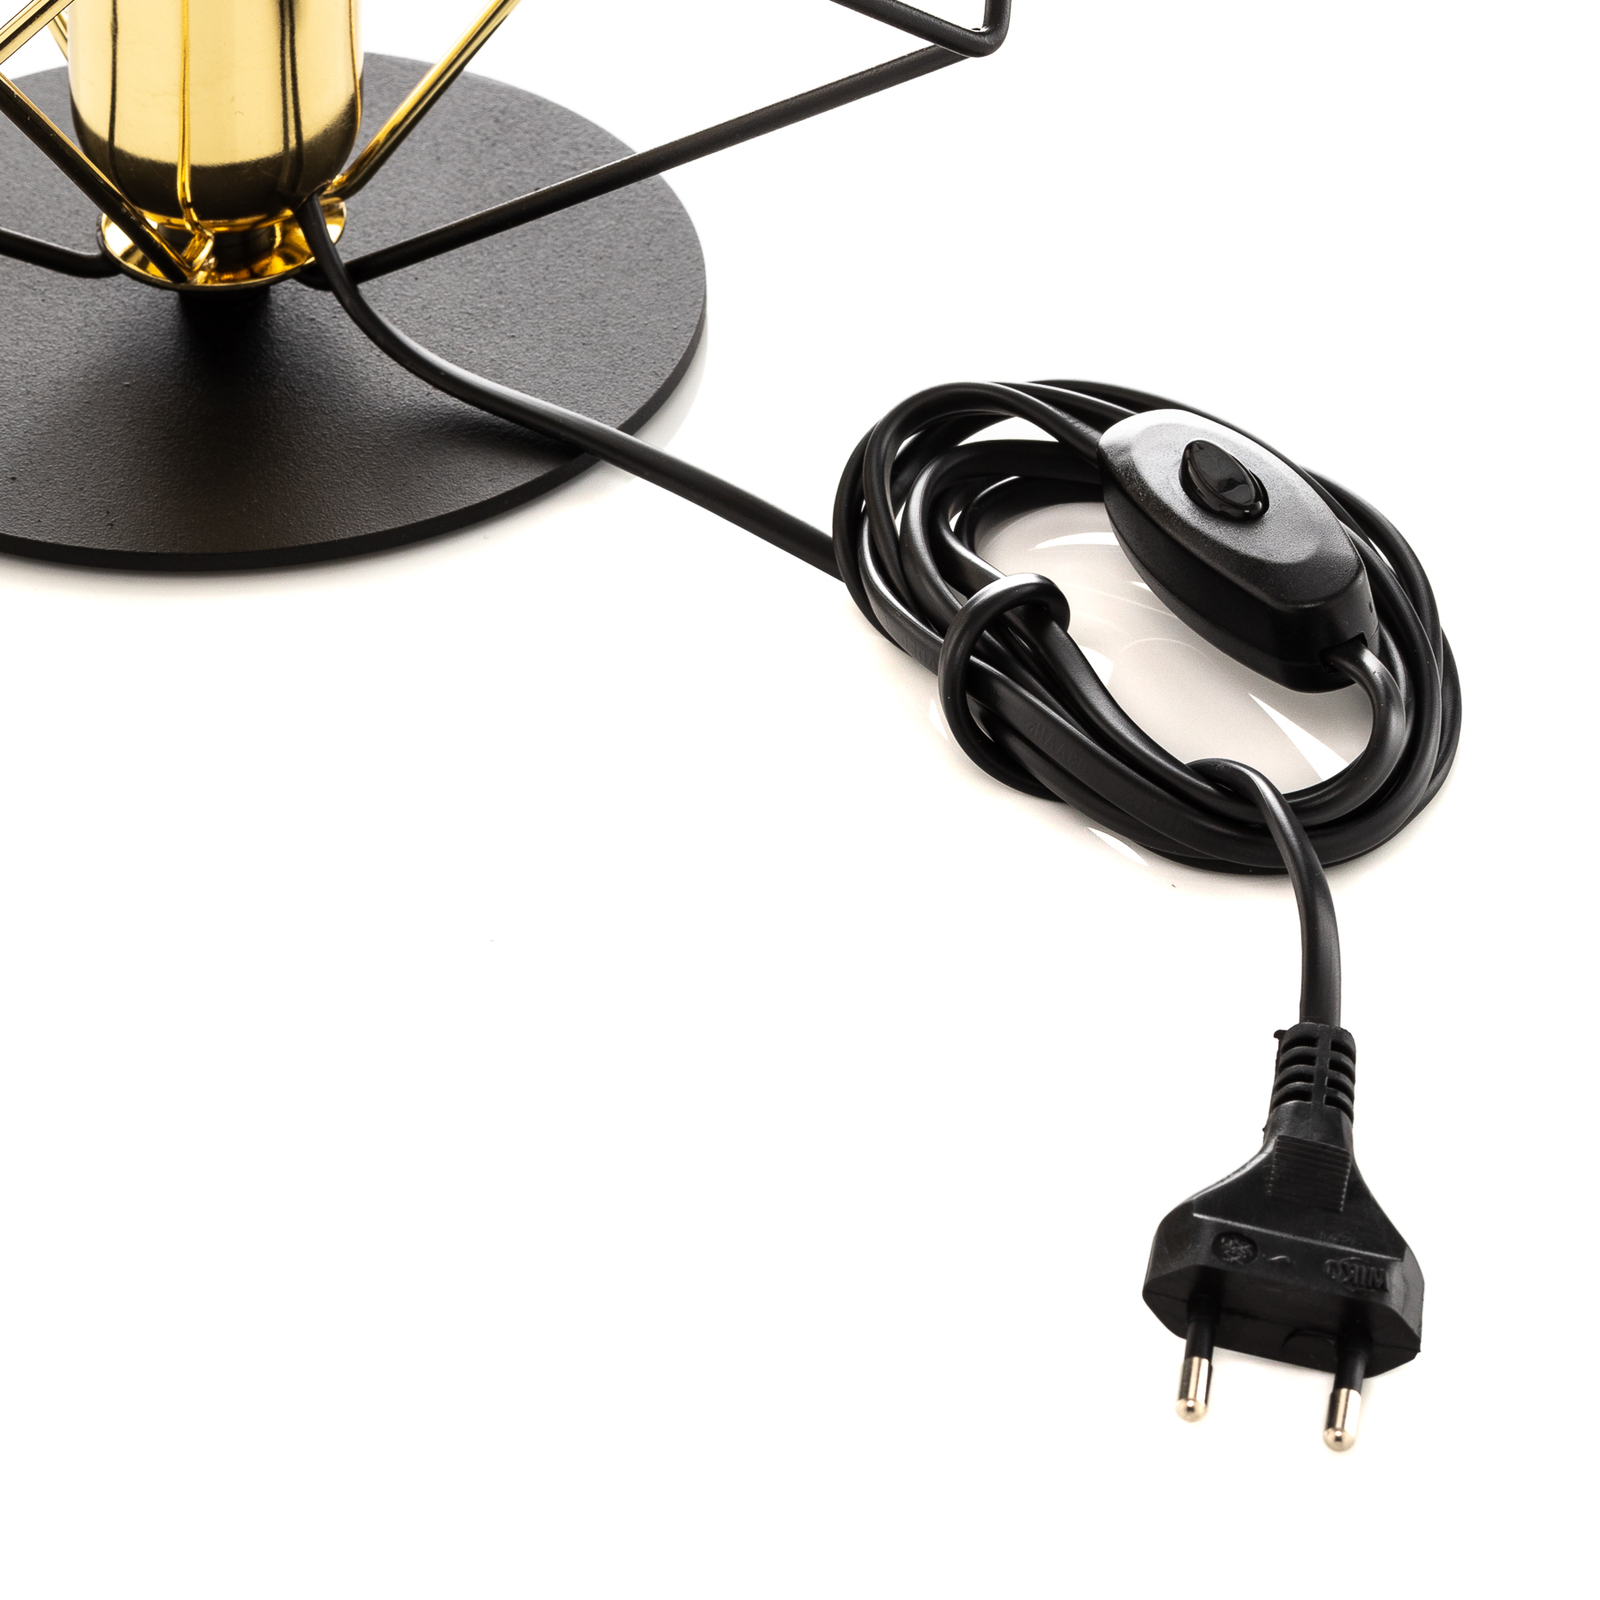 Jednosvíticí stolní lampa Alambre, zlatá/černá